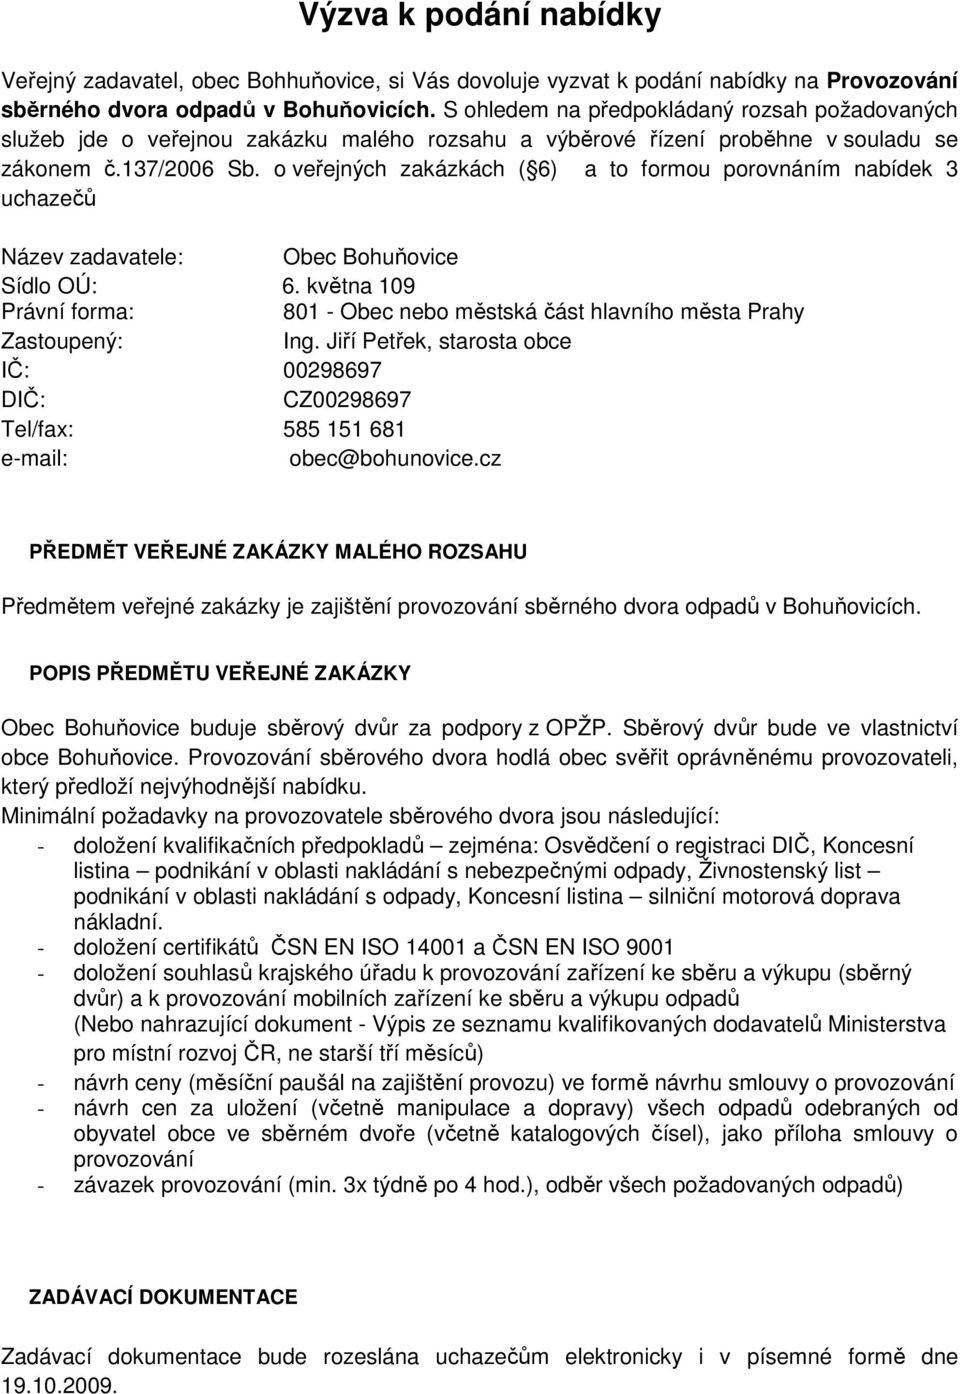 o veřejných zakázkách ( 6) a to formou porovnáním nabídek 3 uchazečů Název zadavatele: Obec Bohuňovice Sídlo OÚ: 6.